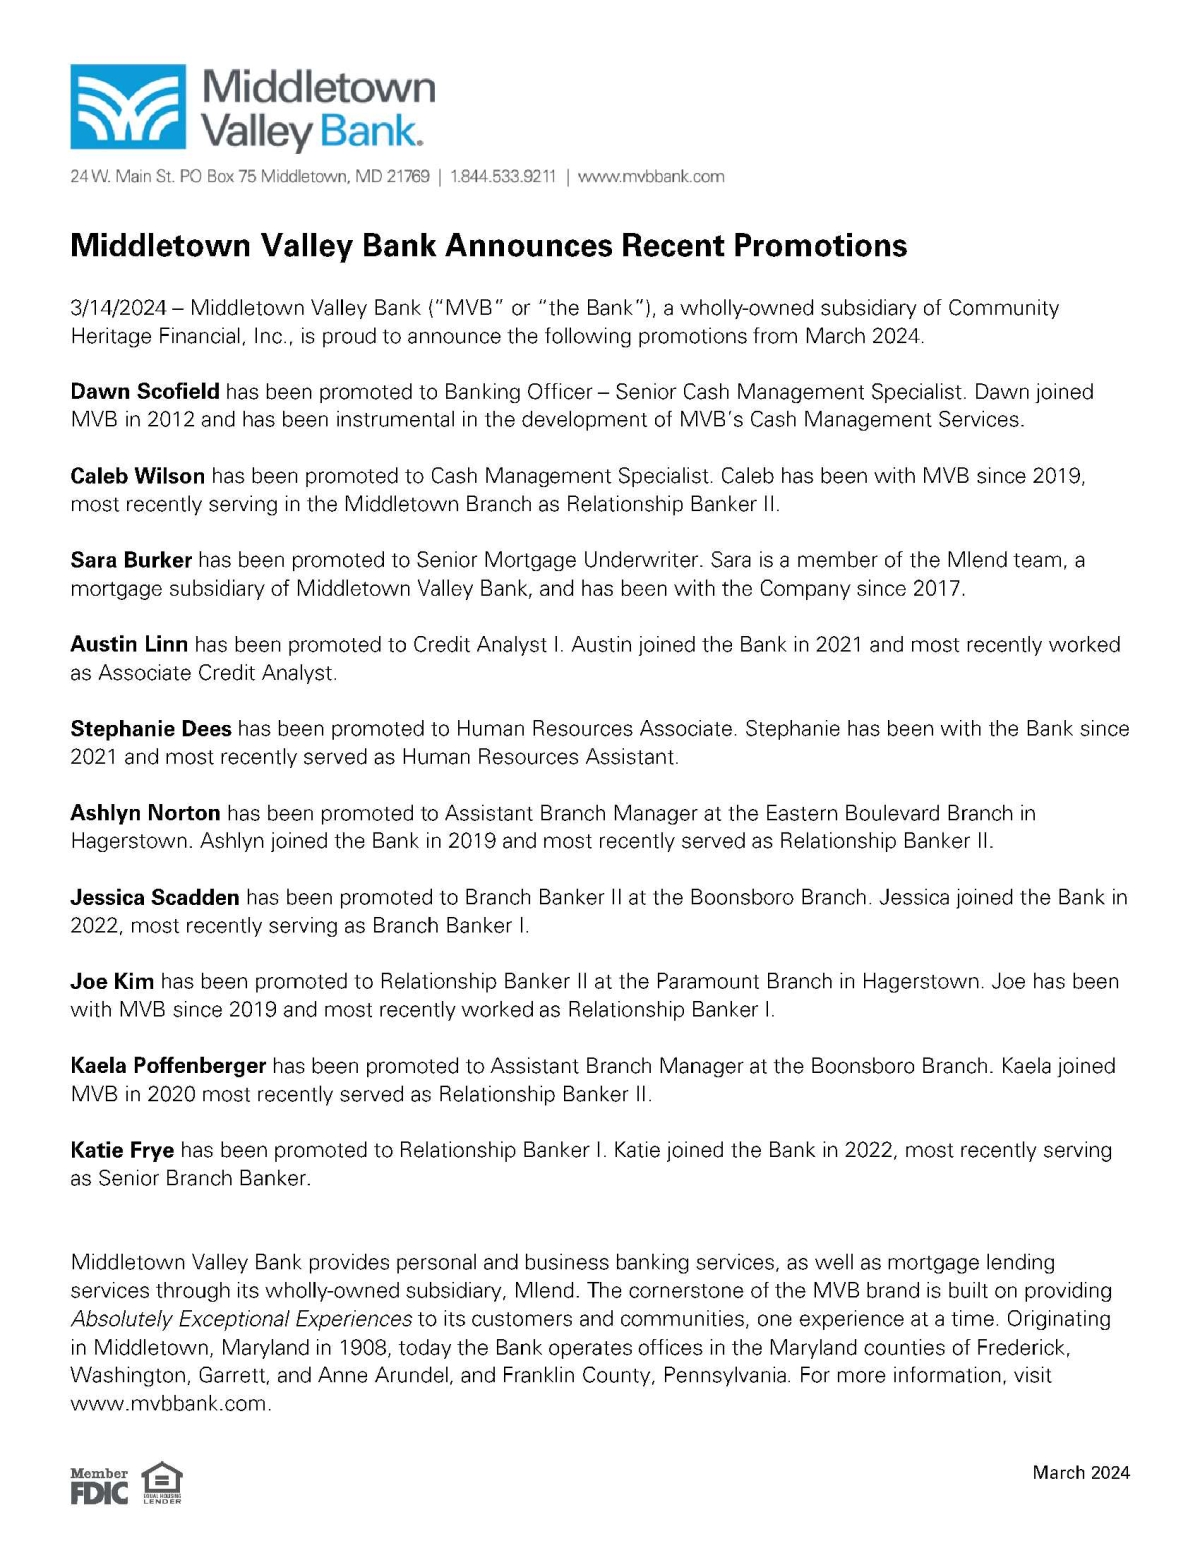 MVB Bank Announces Recent Promotions